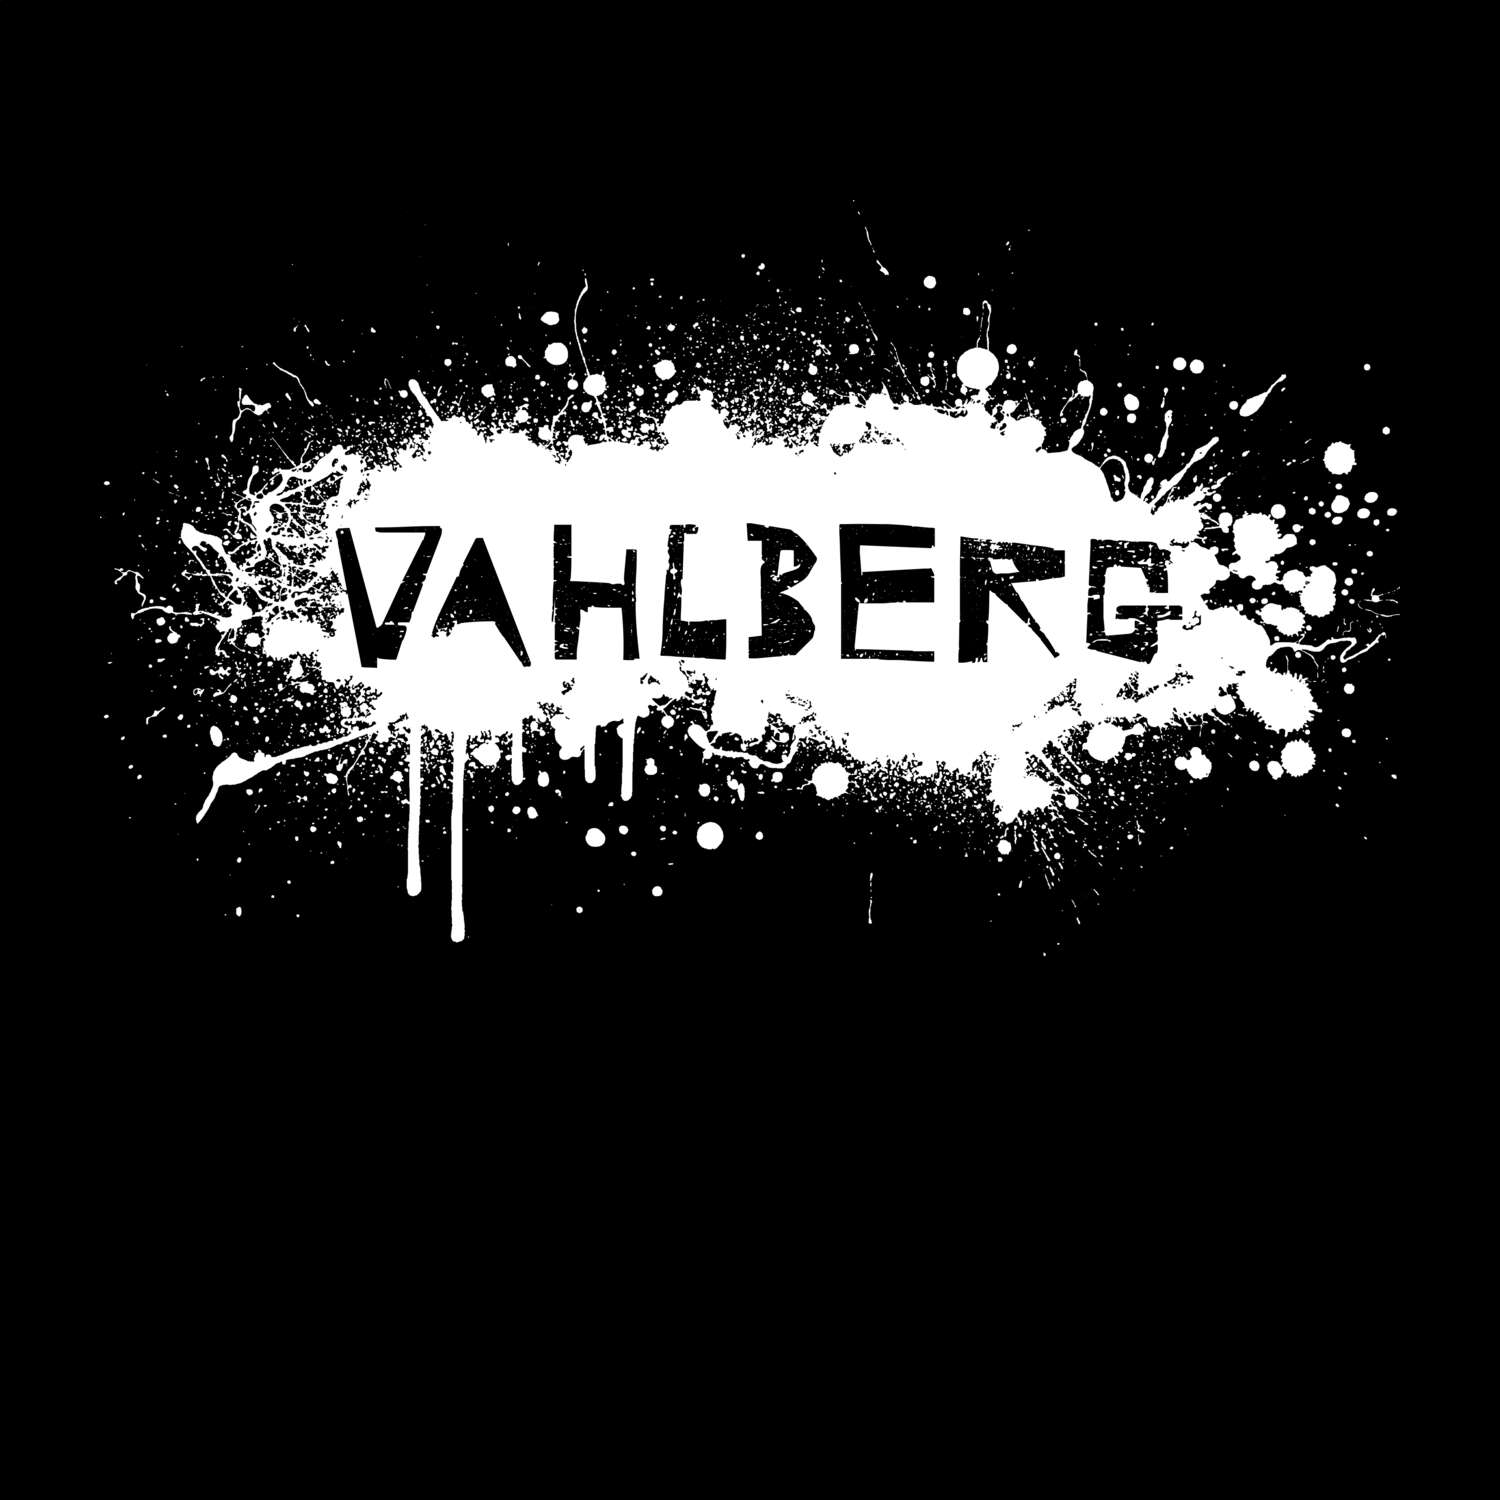 Vahlberg T-Shirt »Paint Splash Punk«